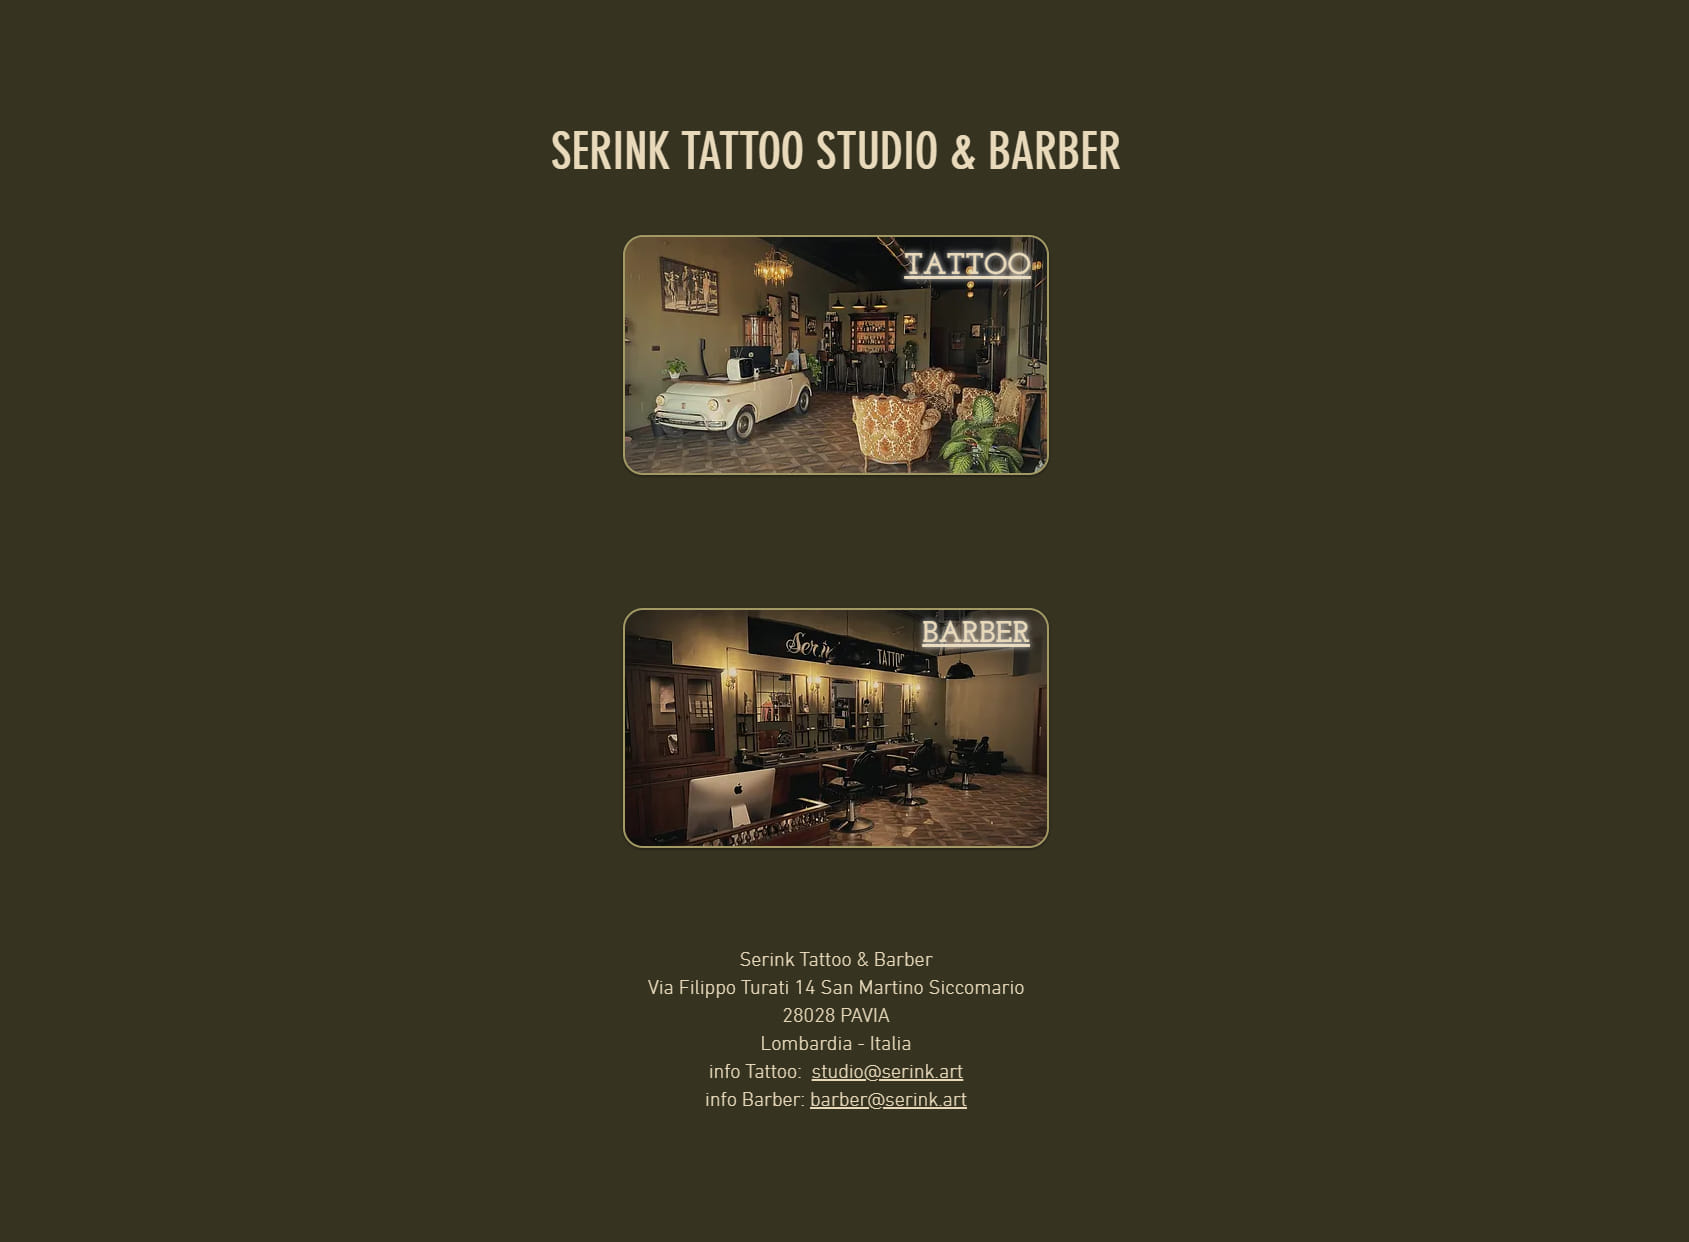 Ser.ink tattoo studio & barber Pavia